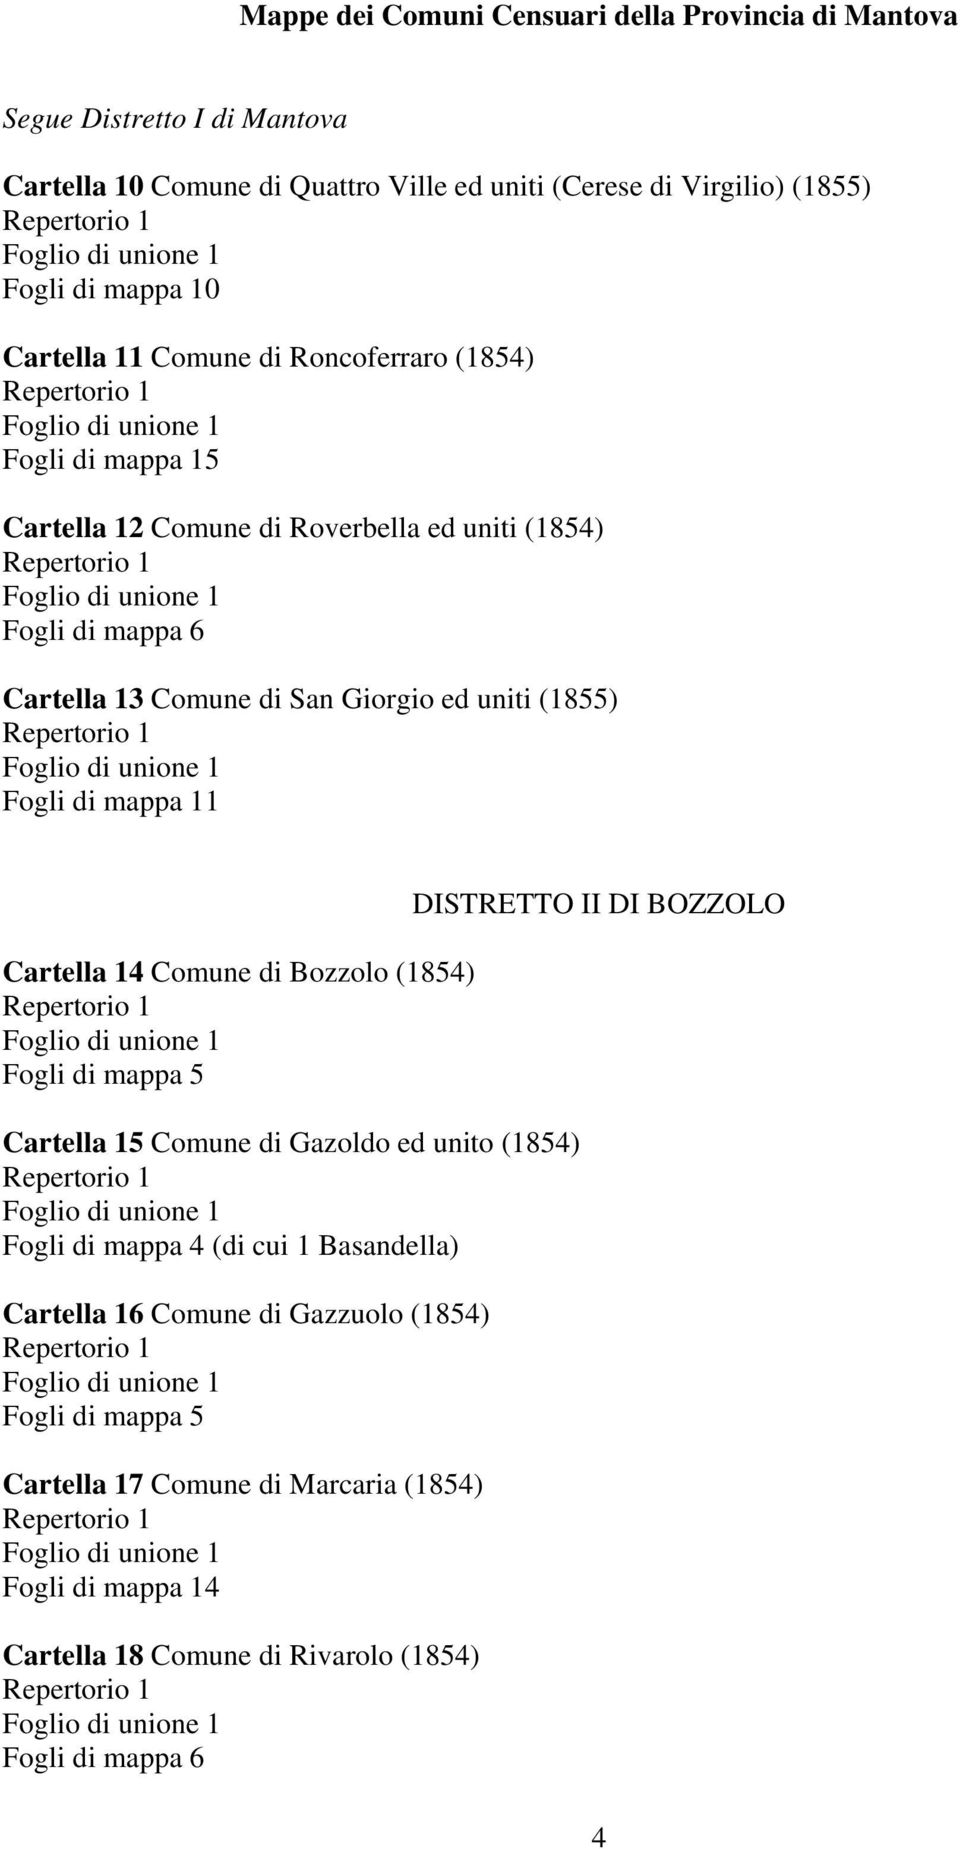 (1855) Fogli di mappa 11 Cartella 14 Comune di Bozzolo (1854) Cartella 15 Comune di Gazoldo ed unito (1854) (di cui 1 Basandella) Cartella 16 Comune